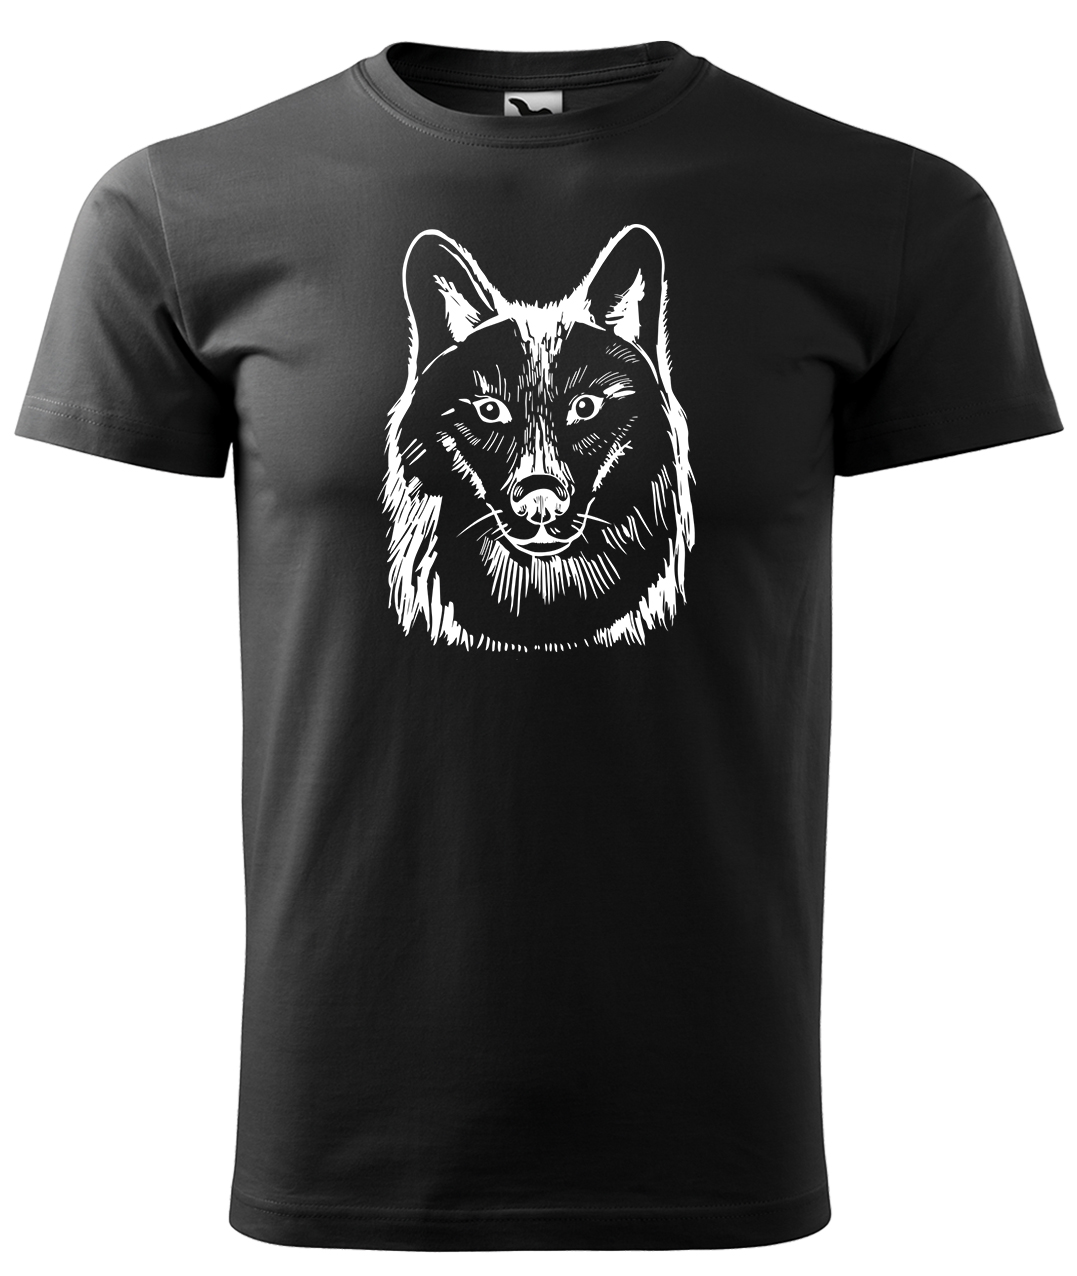 Dětské tričko s vlkem - Kresba vlka Velikost: 10 let / 146 cm, Barva: Černá (01), Délka rukávu: Krátký rukáv